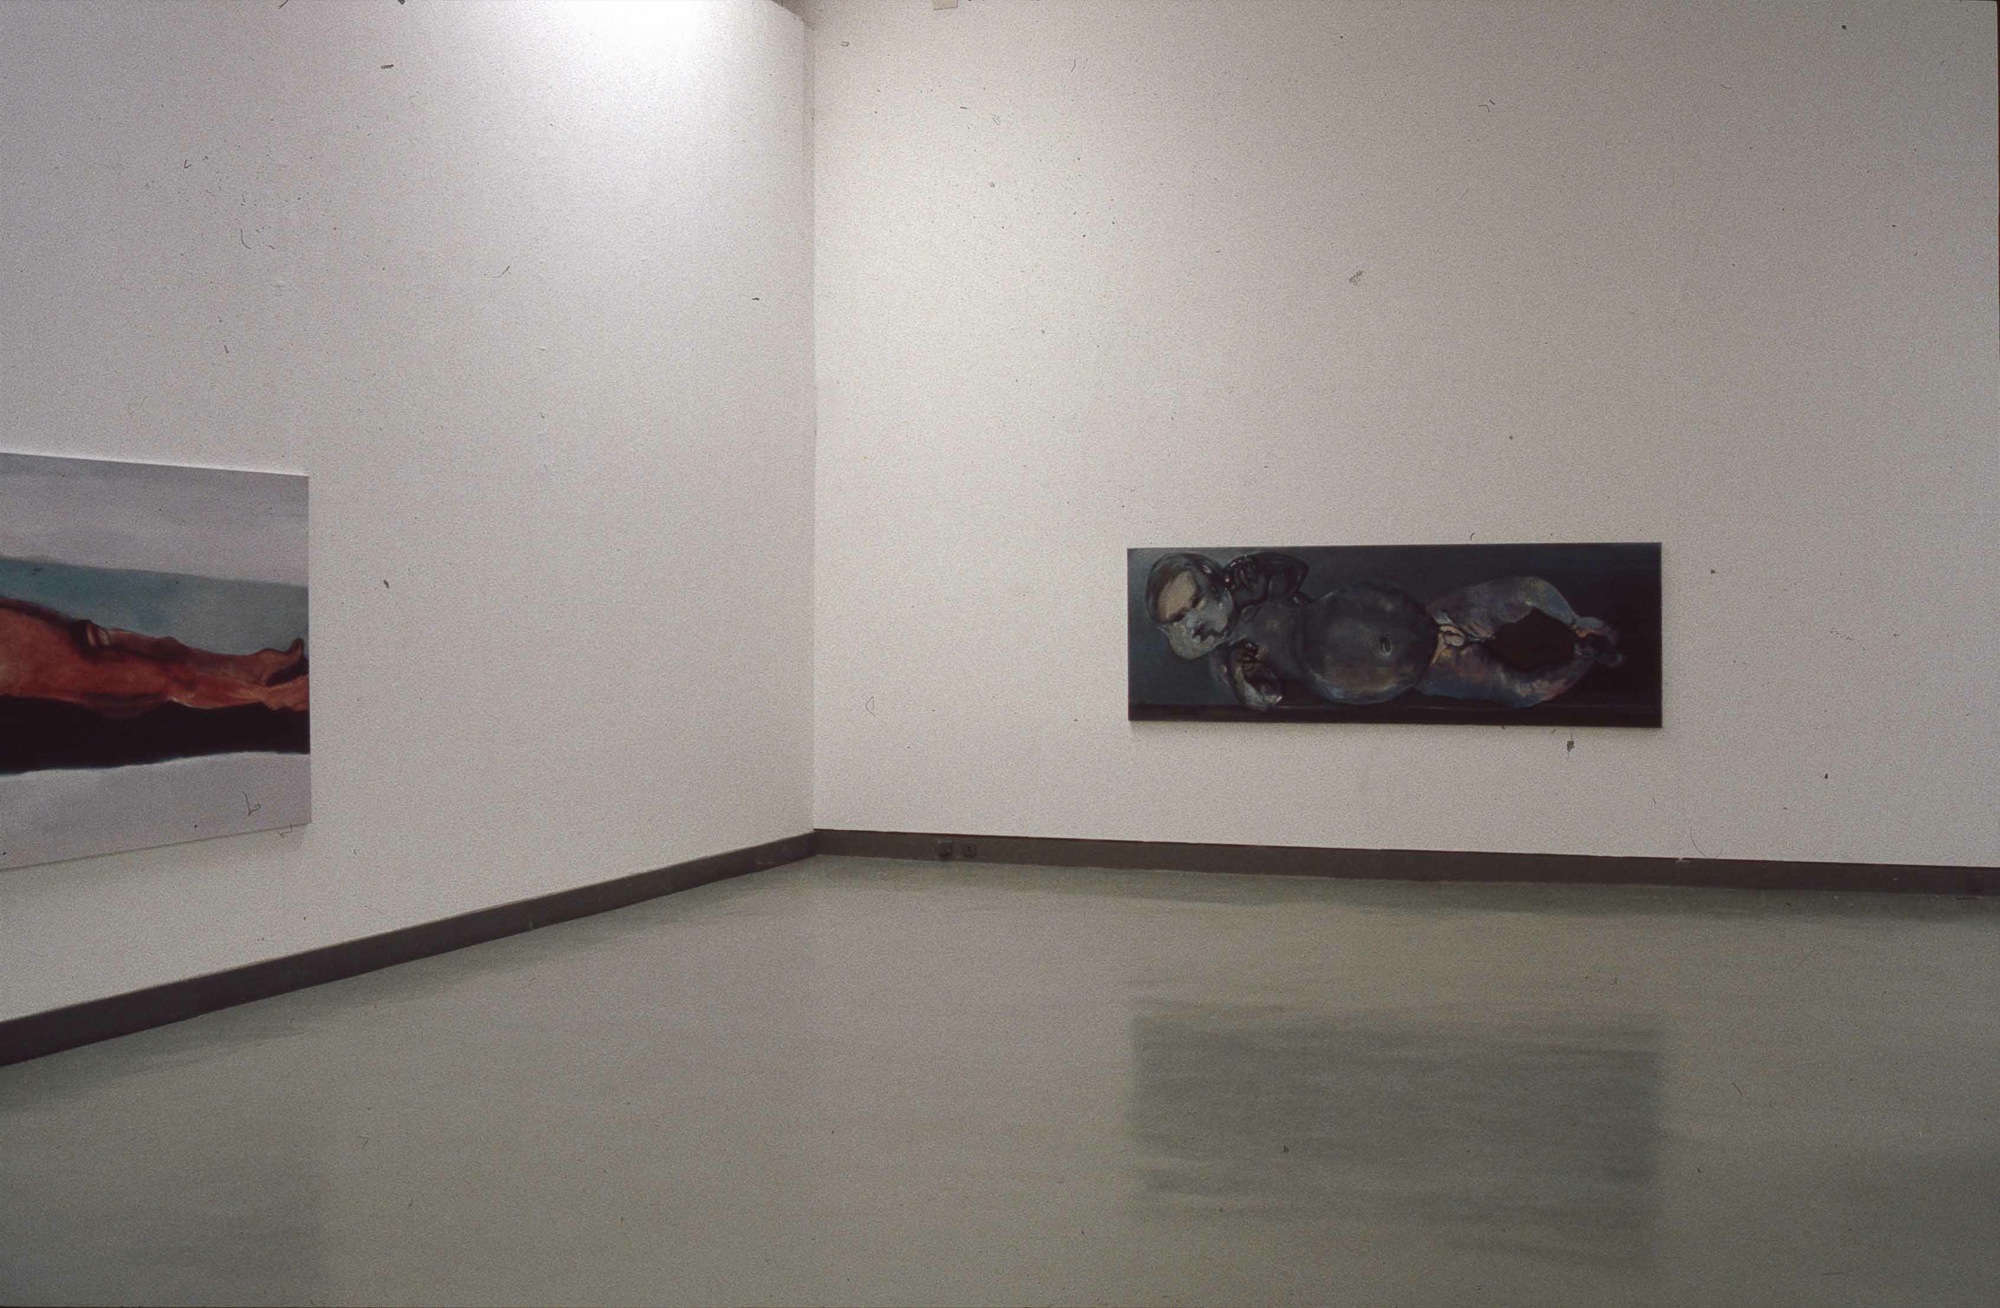 Kunstverein Bonn, Marlene Dumas, 1993